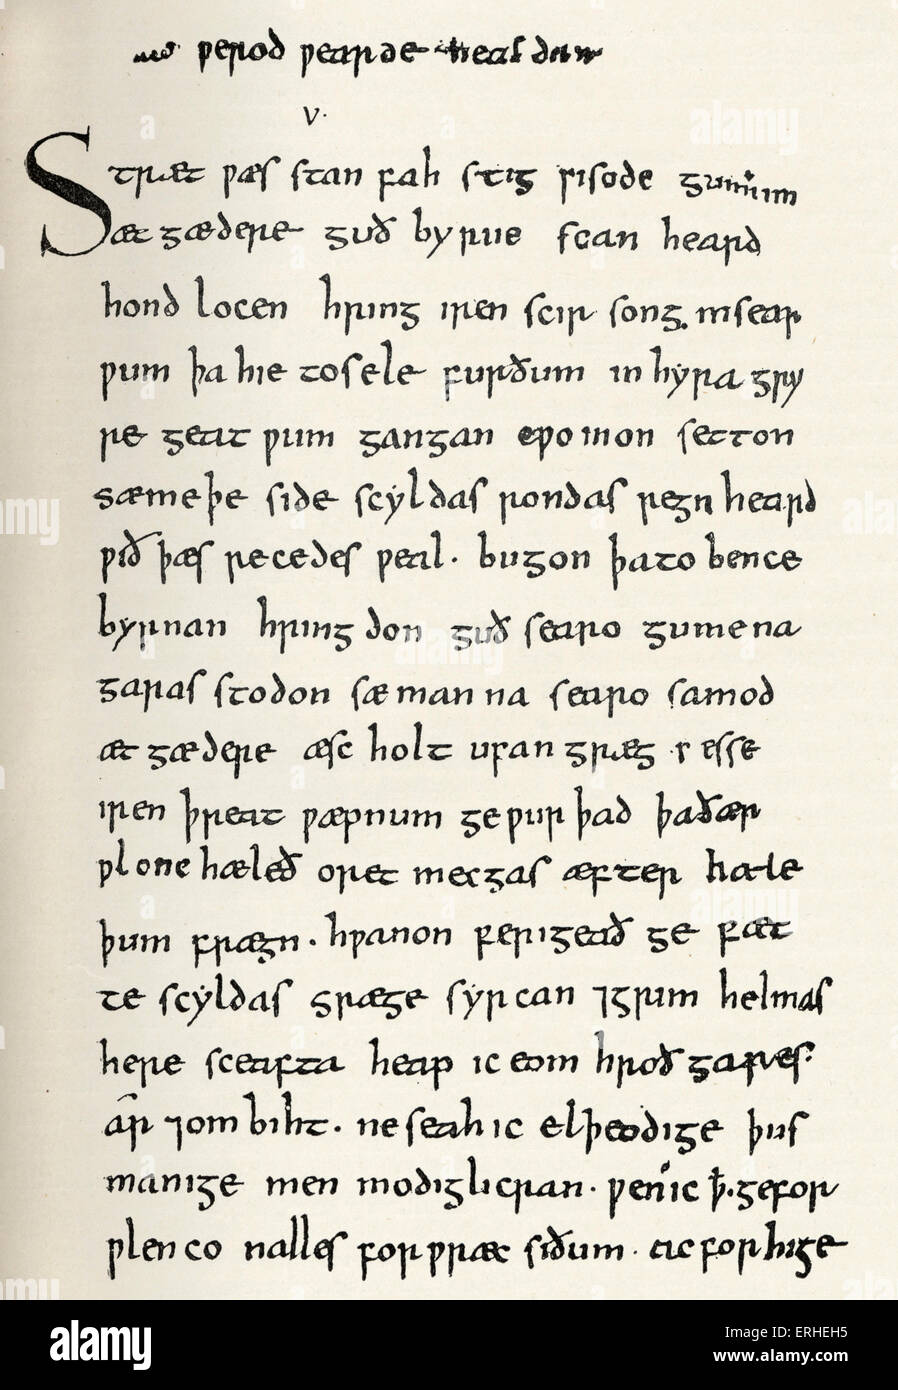 Beowulf - Seite vom Manuskript von Beowulf. c 1000 AD - British Museum Stockfoto